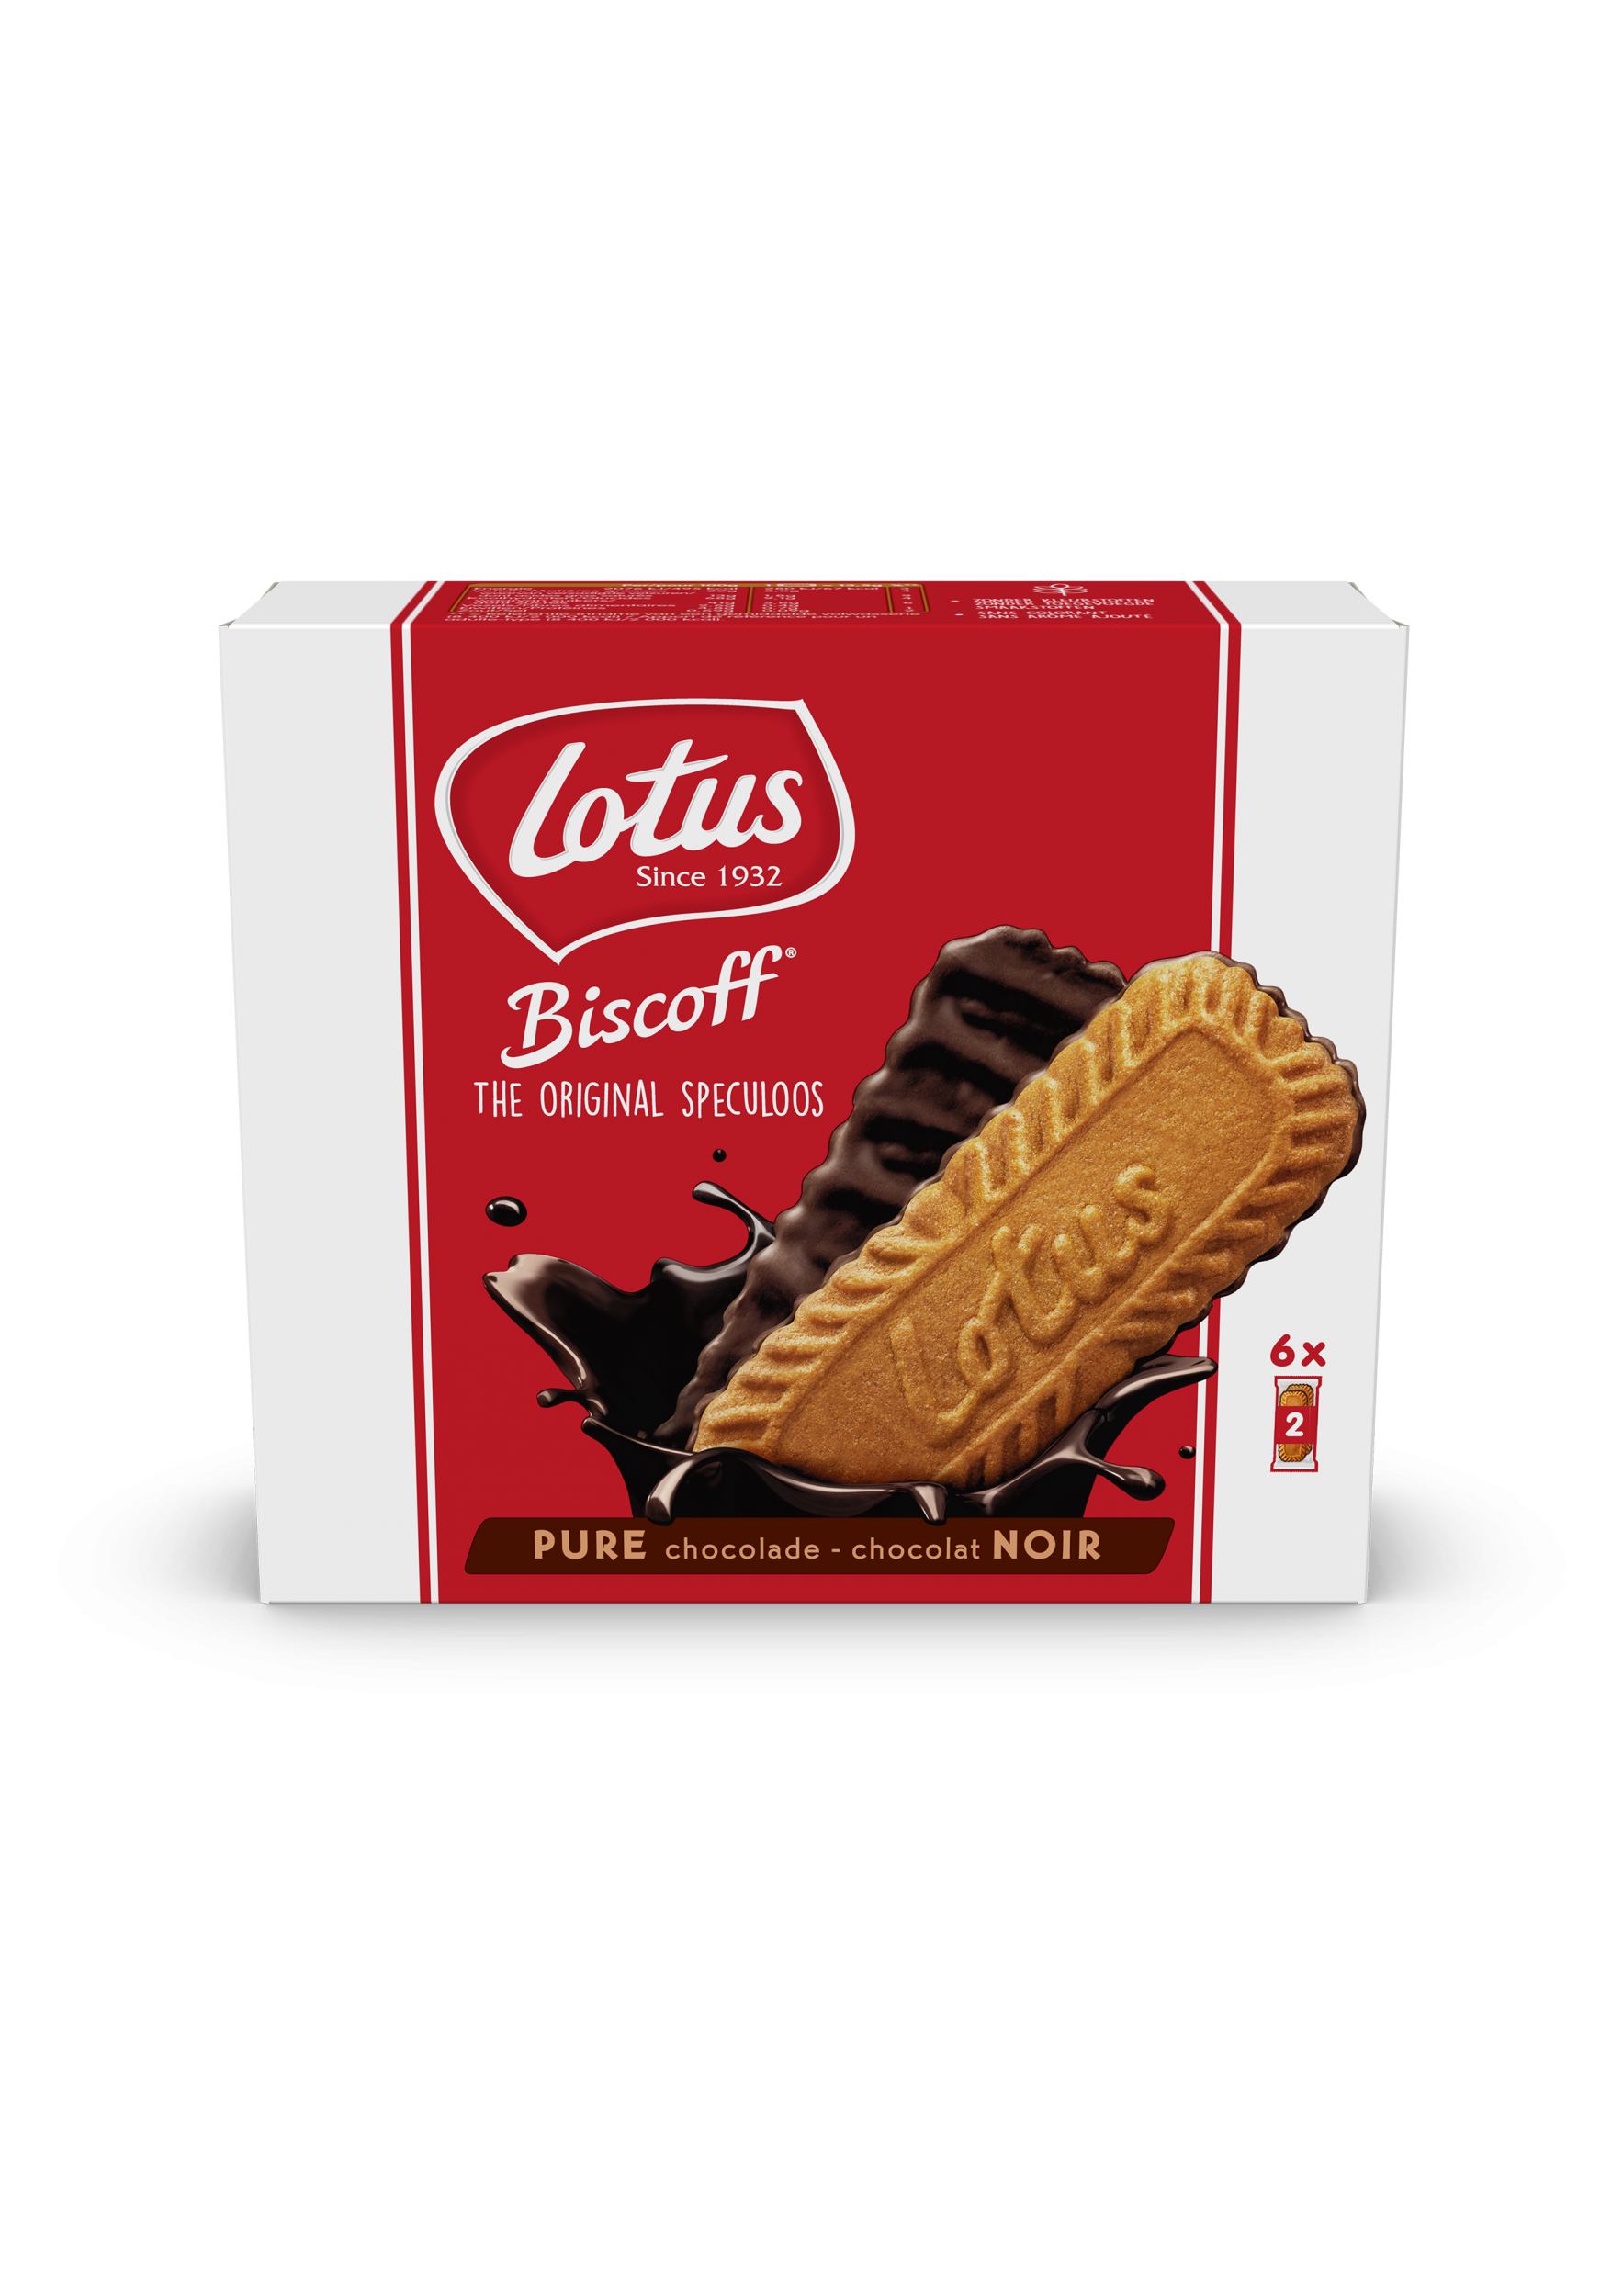 Lotus Biscoff Au Chocolat Lotus Biscoff 3968